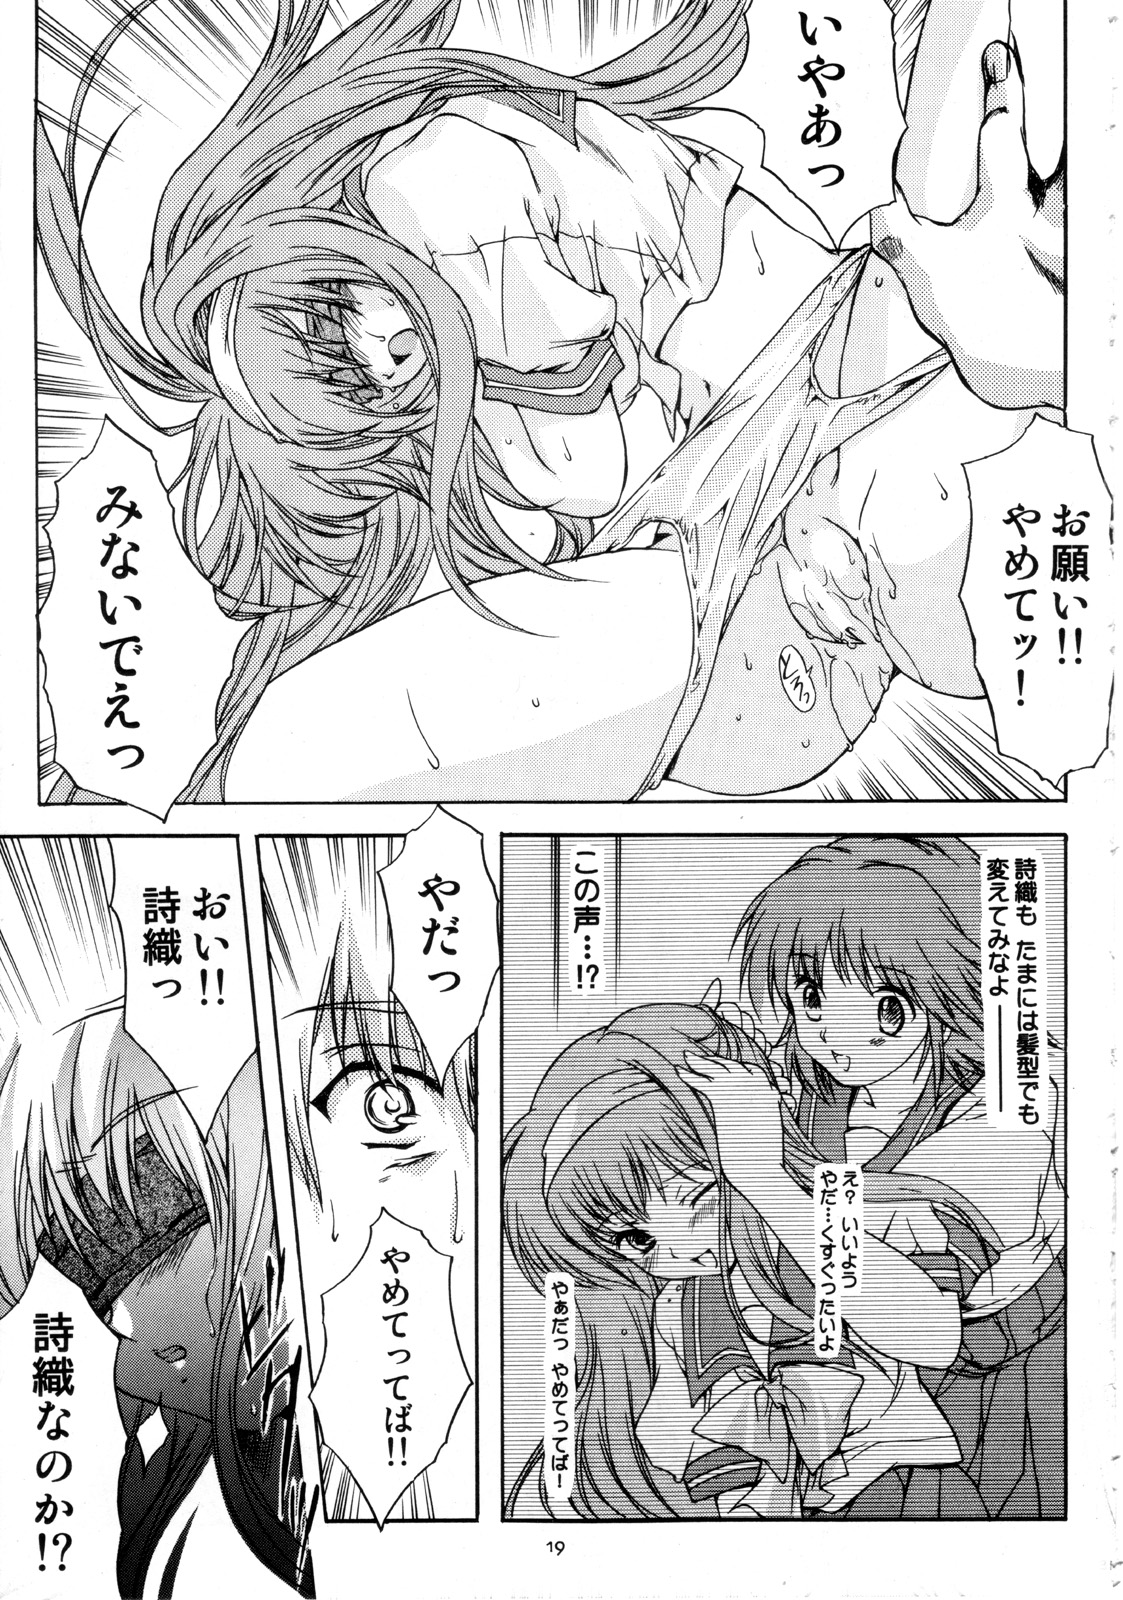 [HIGH RISK REVOLUTION] Shiori Vol.12 Haitoku no Cinderella (Tokimeki Memorial) page 20 full